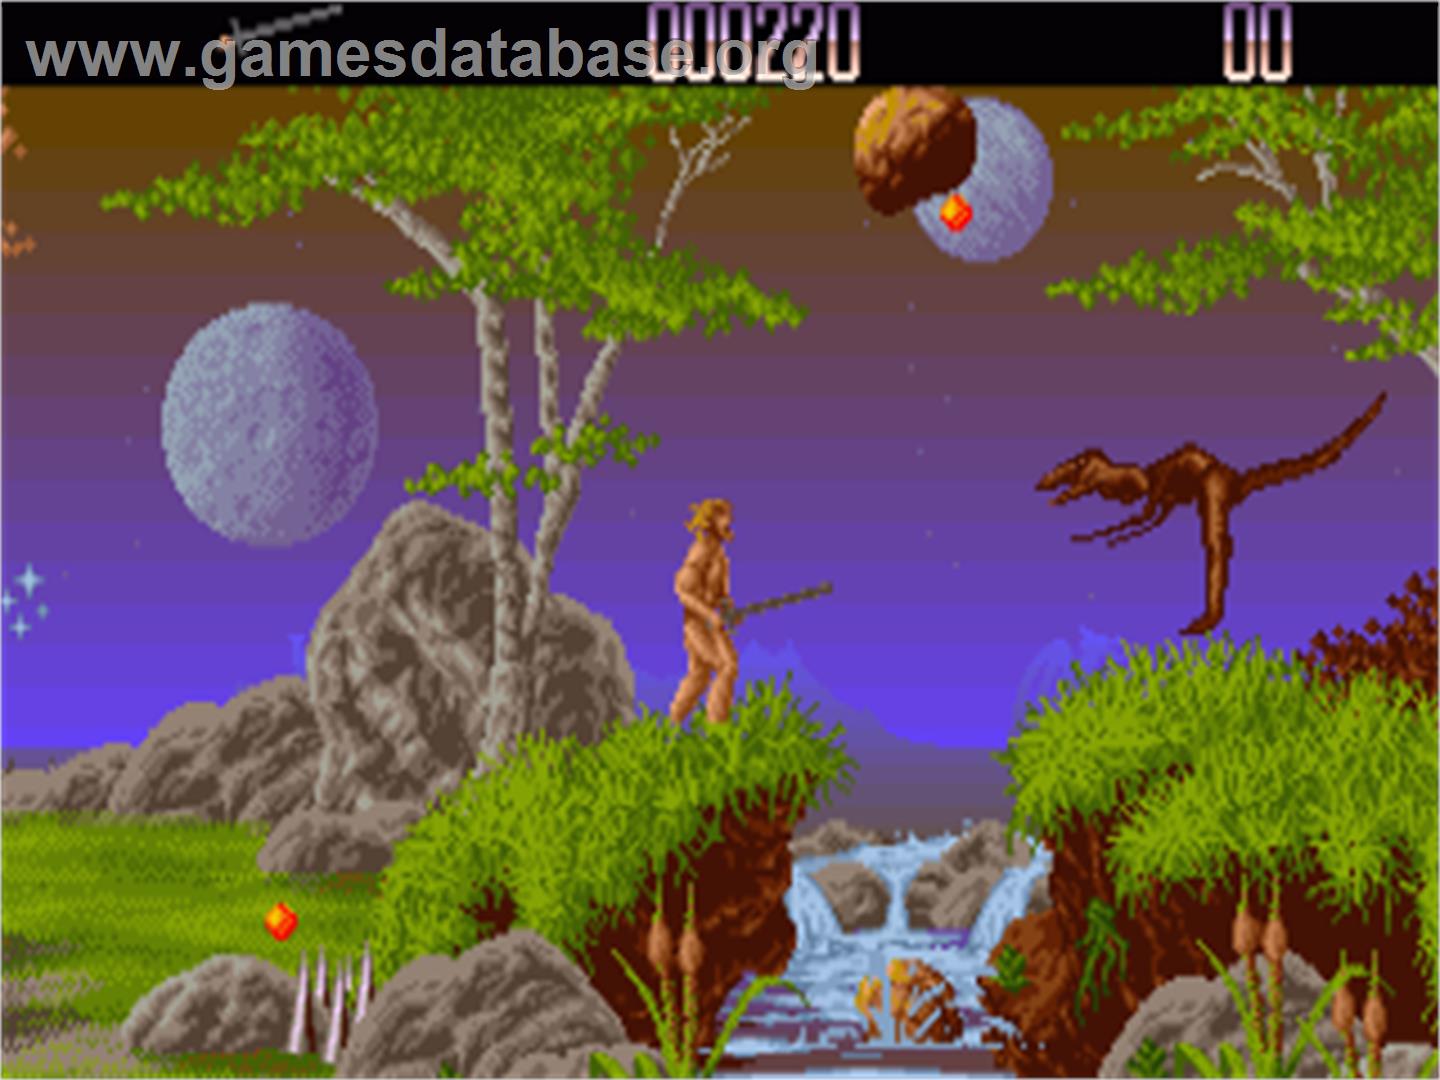 Unreal - Commodore Amiga - Artwork - In Game